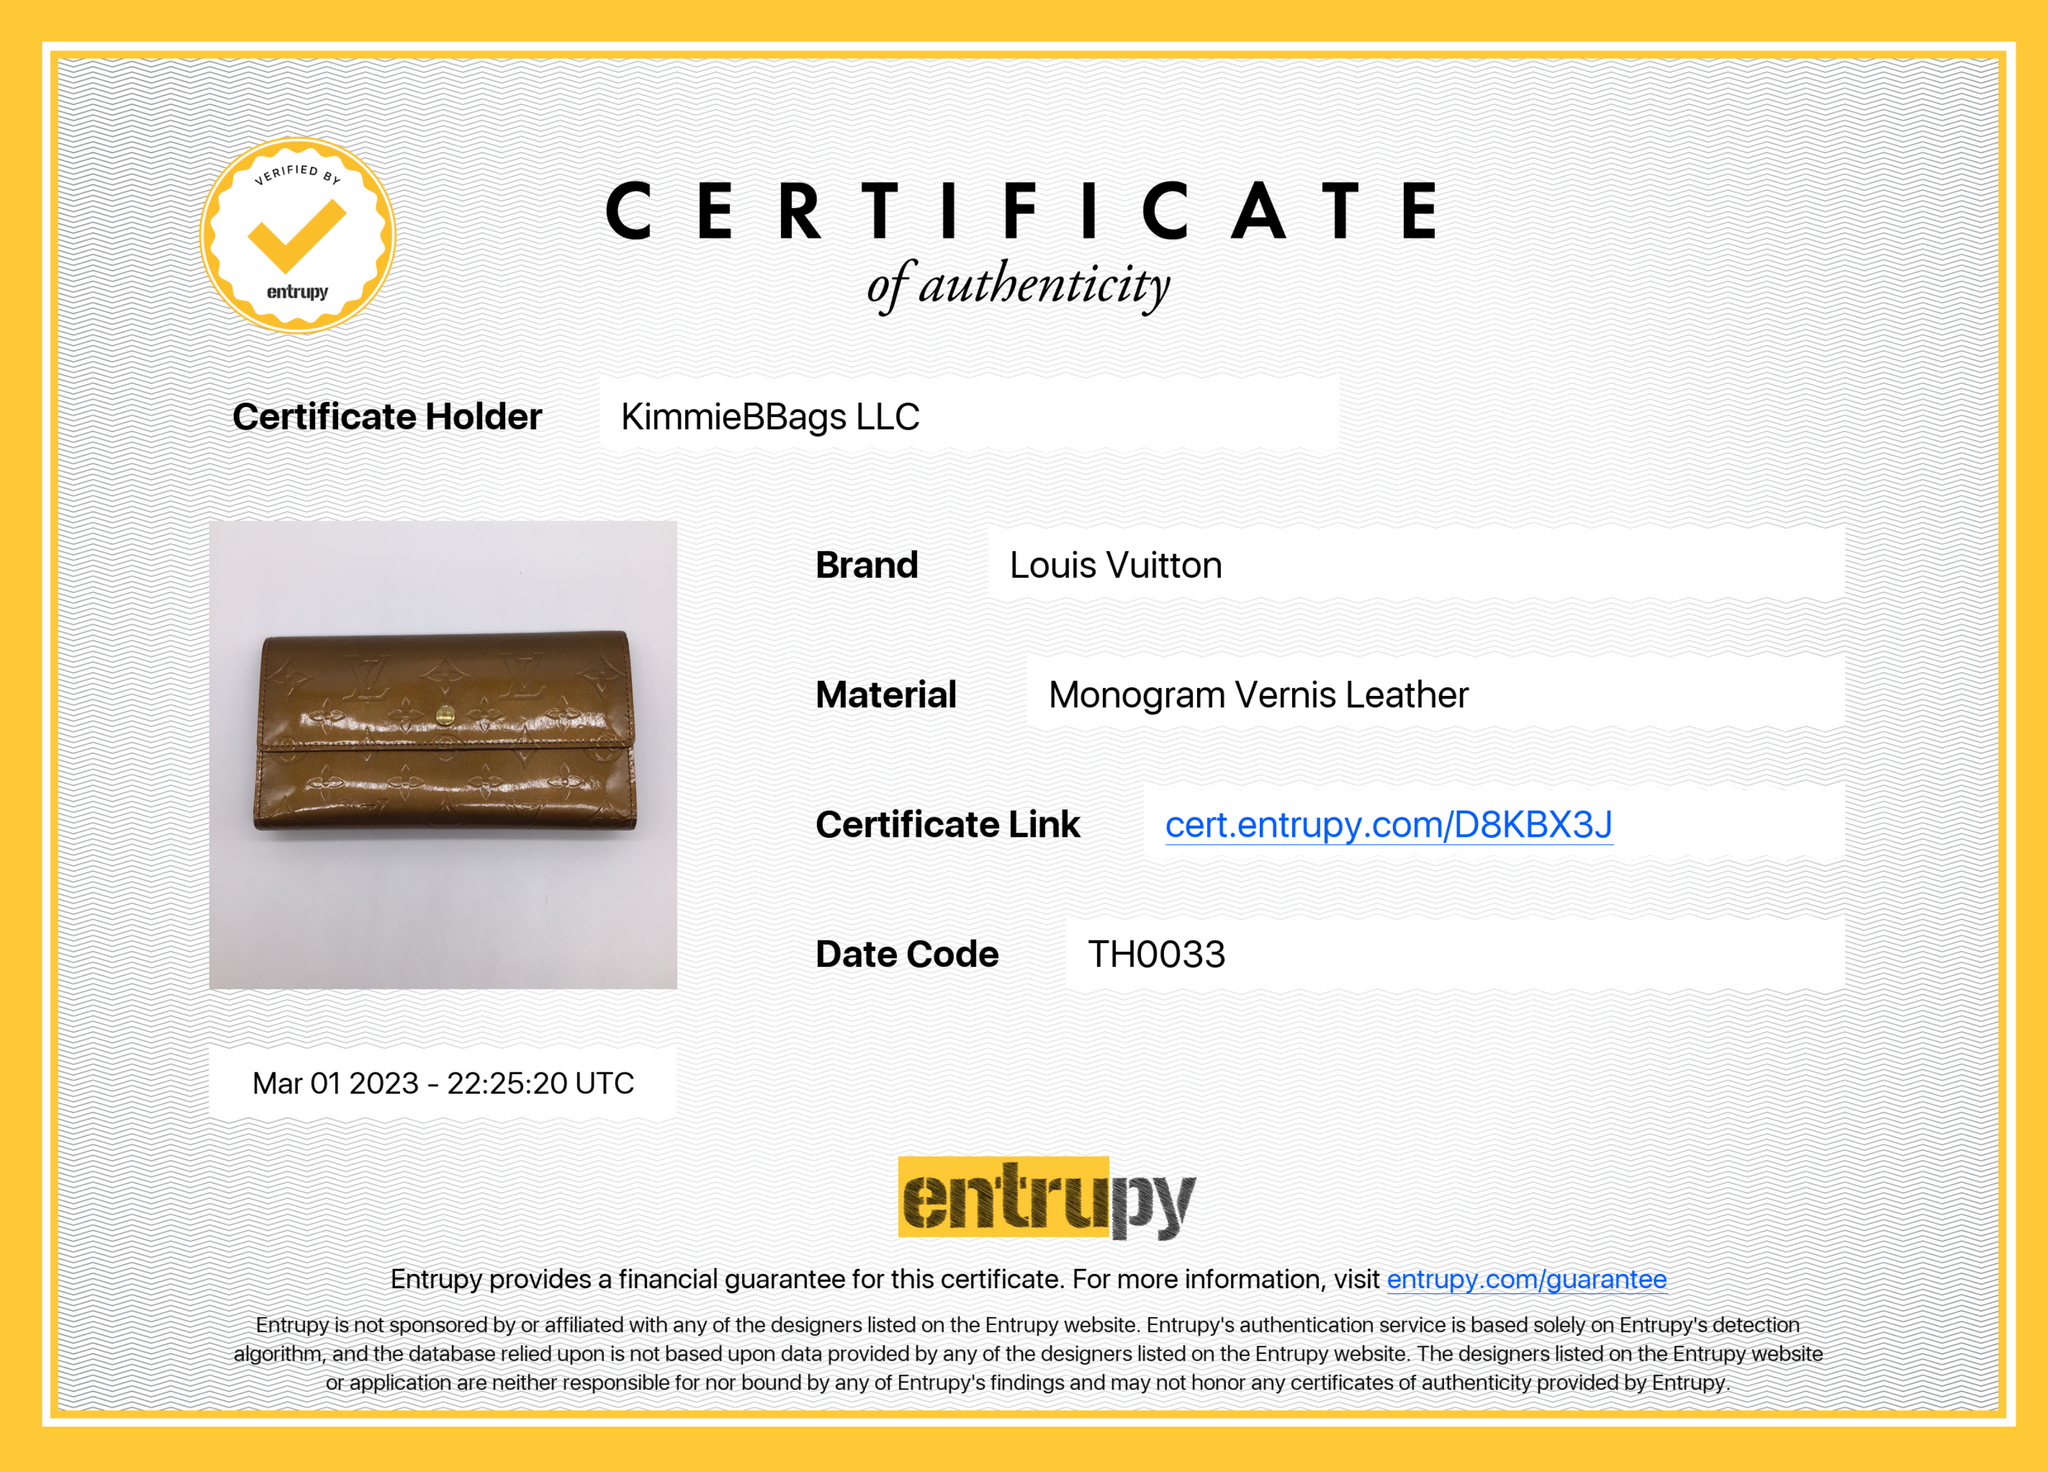 Louis Vuitton Vernis Tan Beige Gold Leather Long Cash Buttoned Envelope  Wallet